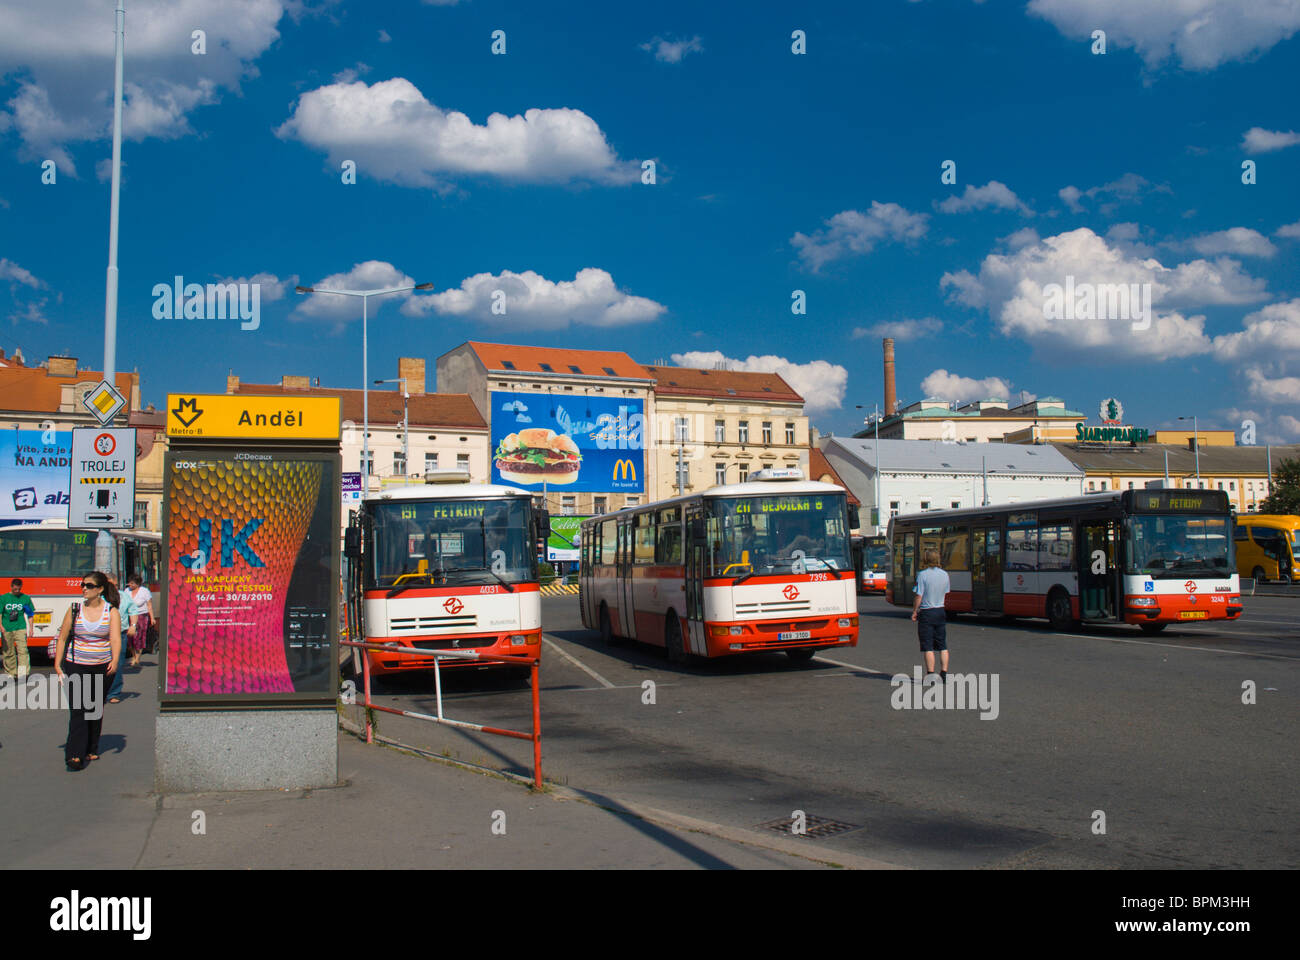 Andel autobusove nadrazi l'Andel la stazione degli autobus di quartiere di Smichov Praga Repubblica Ceca Foto Stock